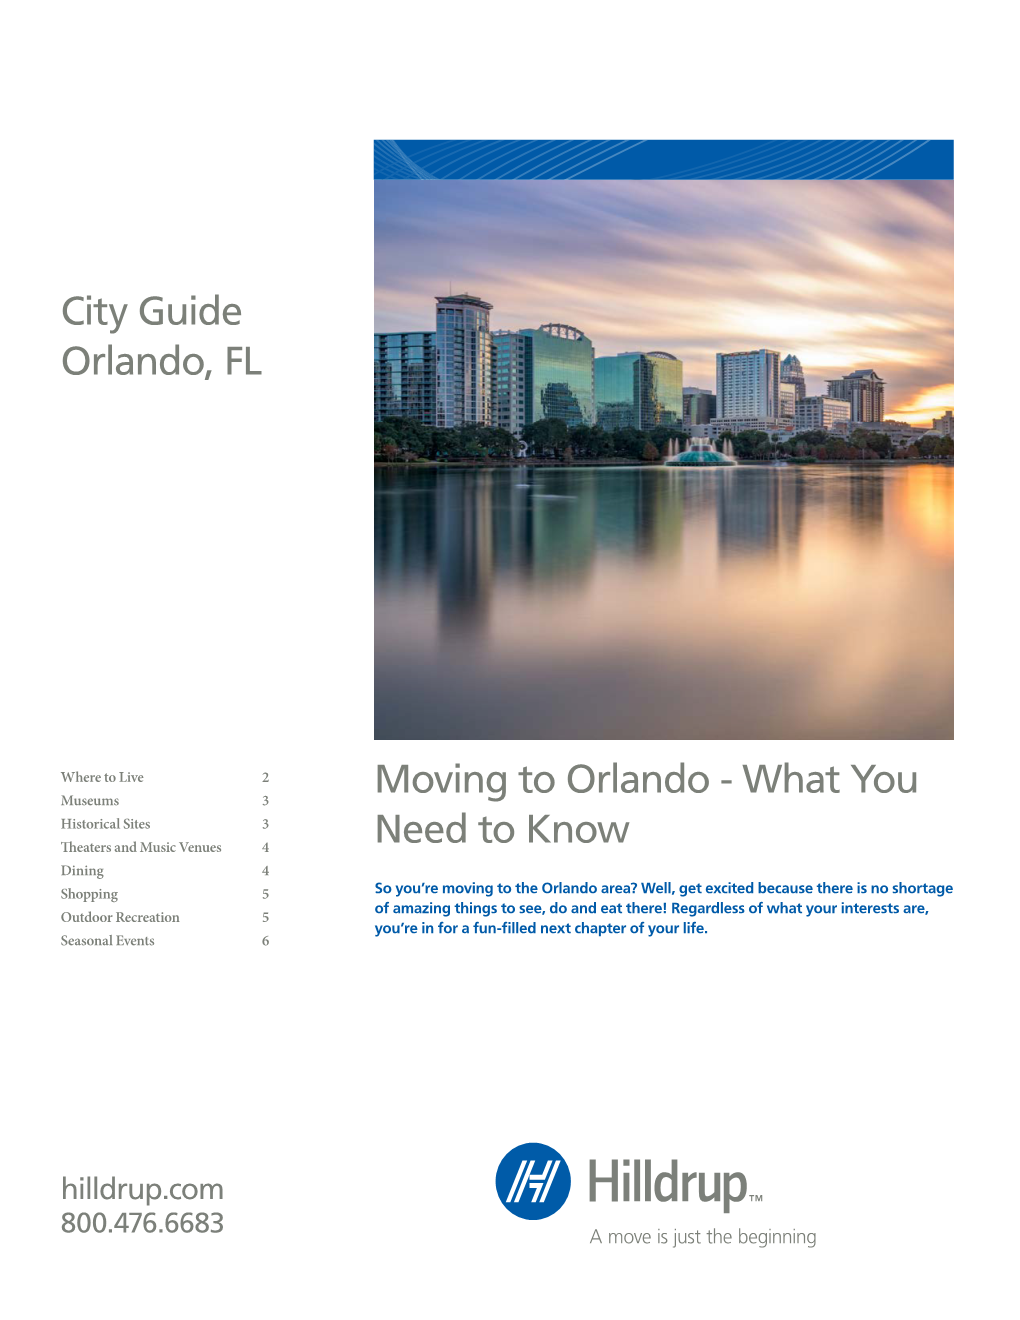 City Guide Orlando, FL Moving to Orlando